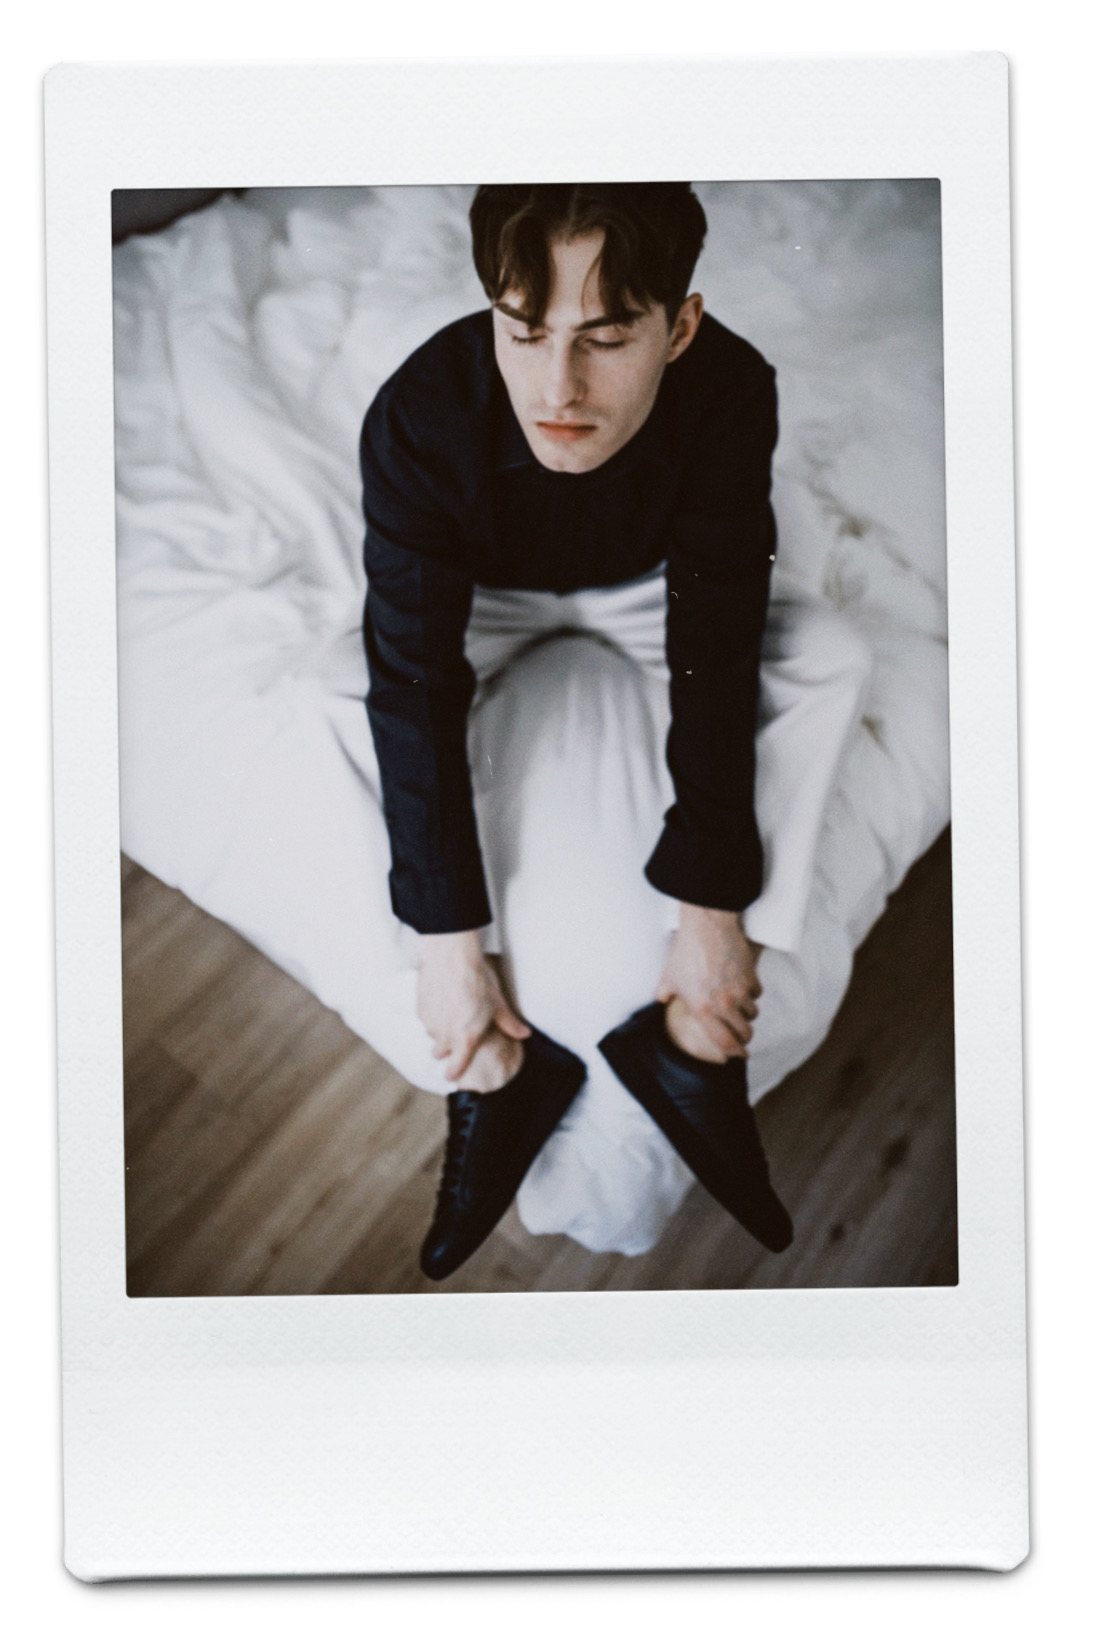 Mister Matthew Outfit in Schwarz-Weiß auf dem Bett sitzend.